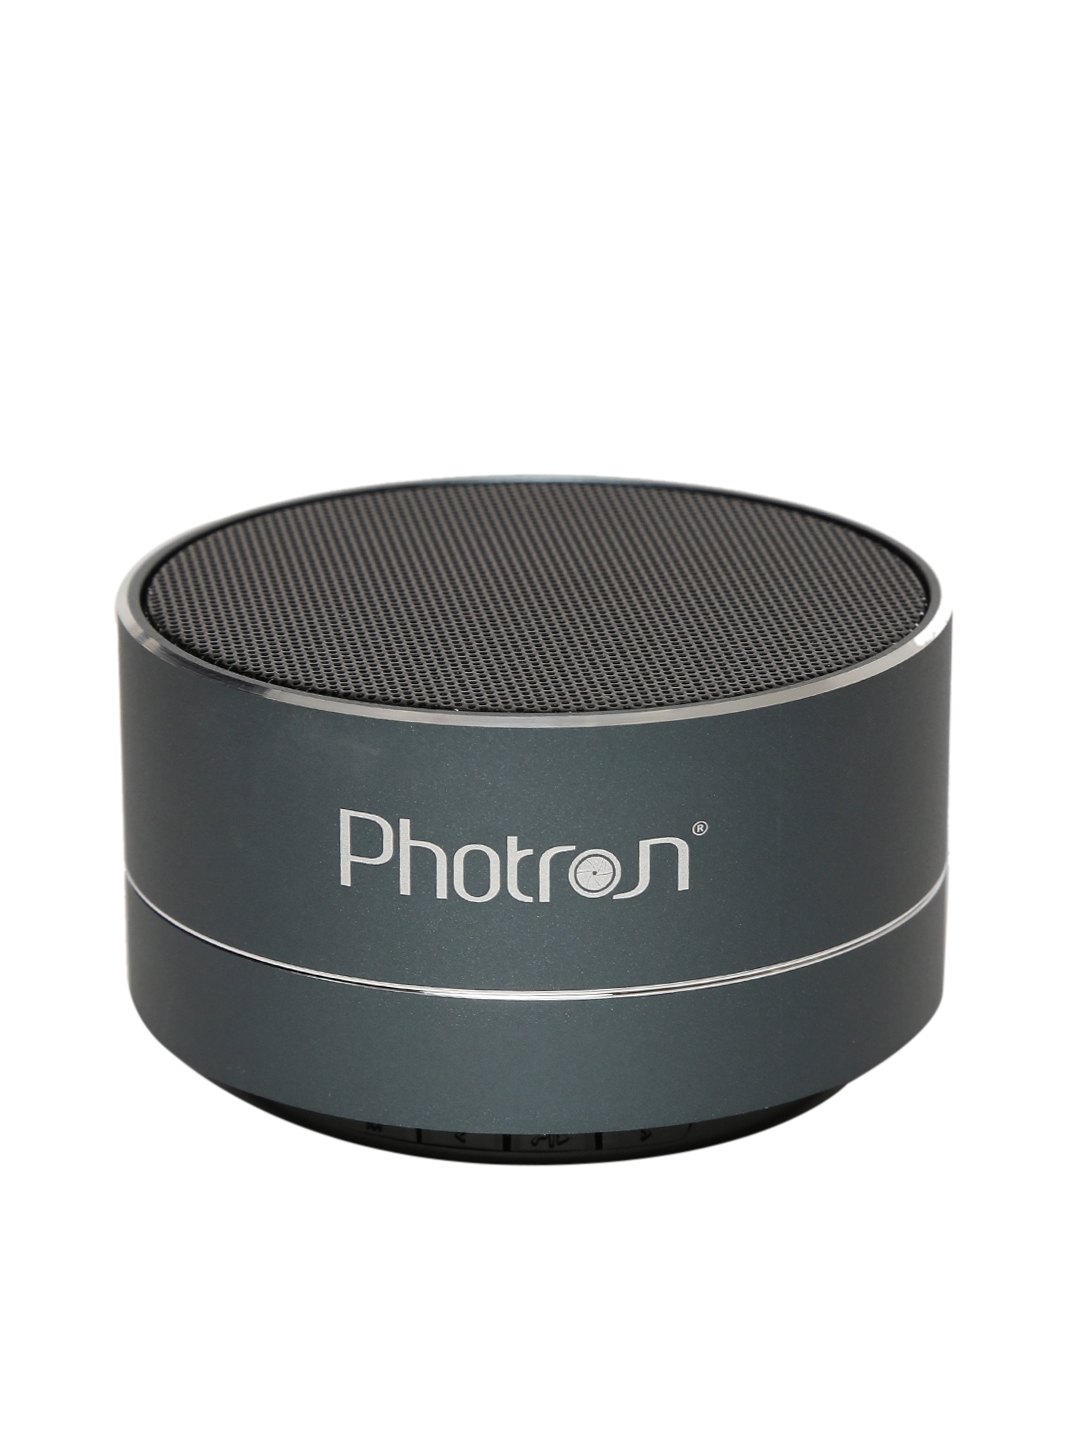 photron p10